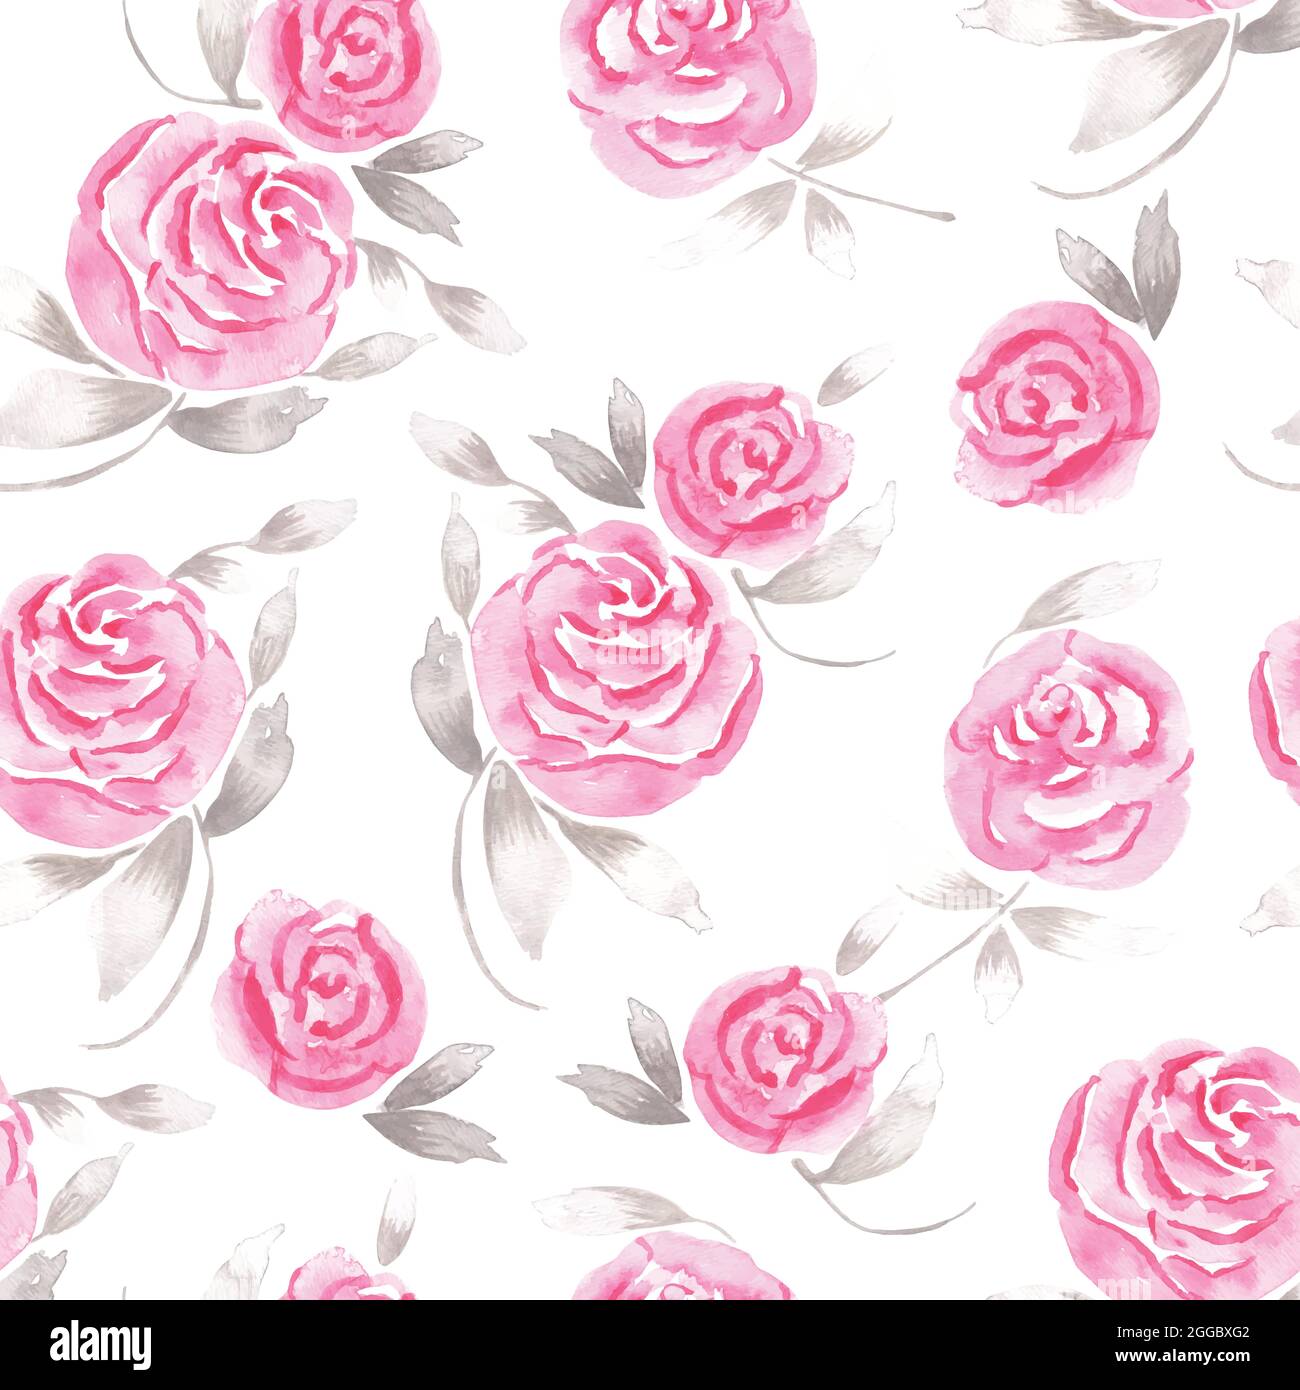 Motif romantique avec fleurs roses et feuilles grises abstraites dessinées à l'aquarelle Illustration de Vecteur